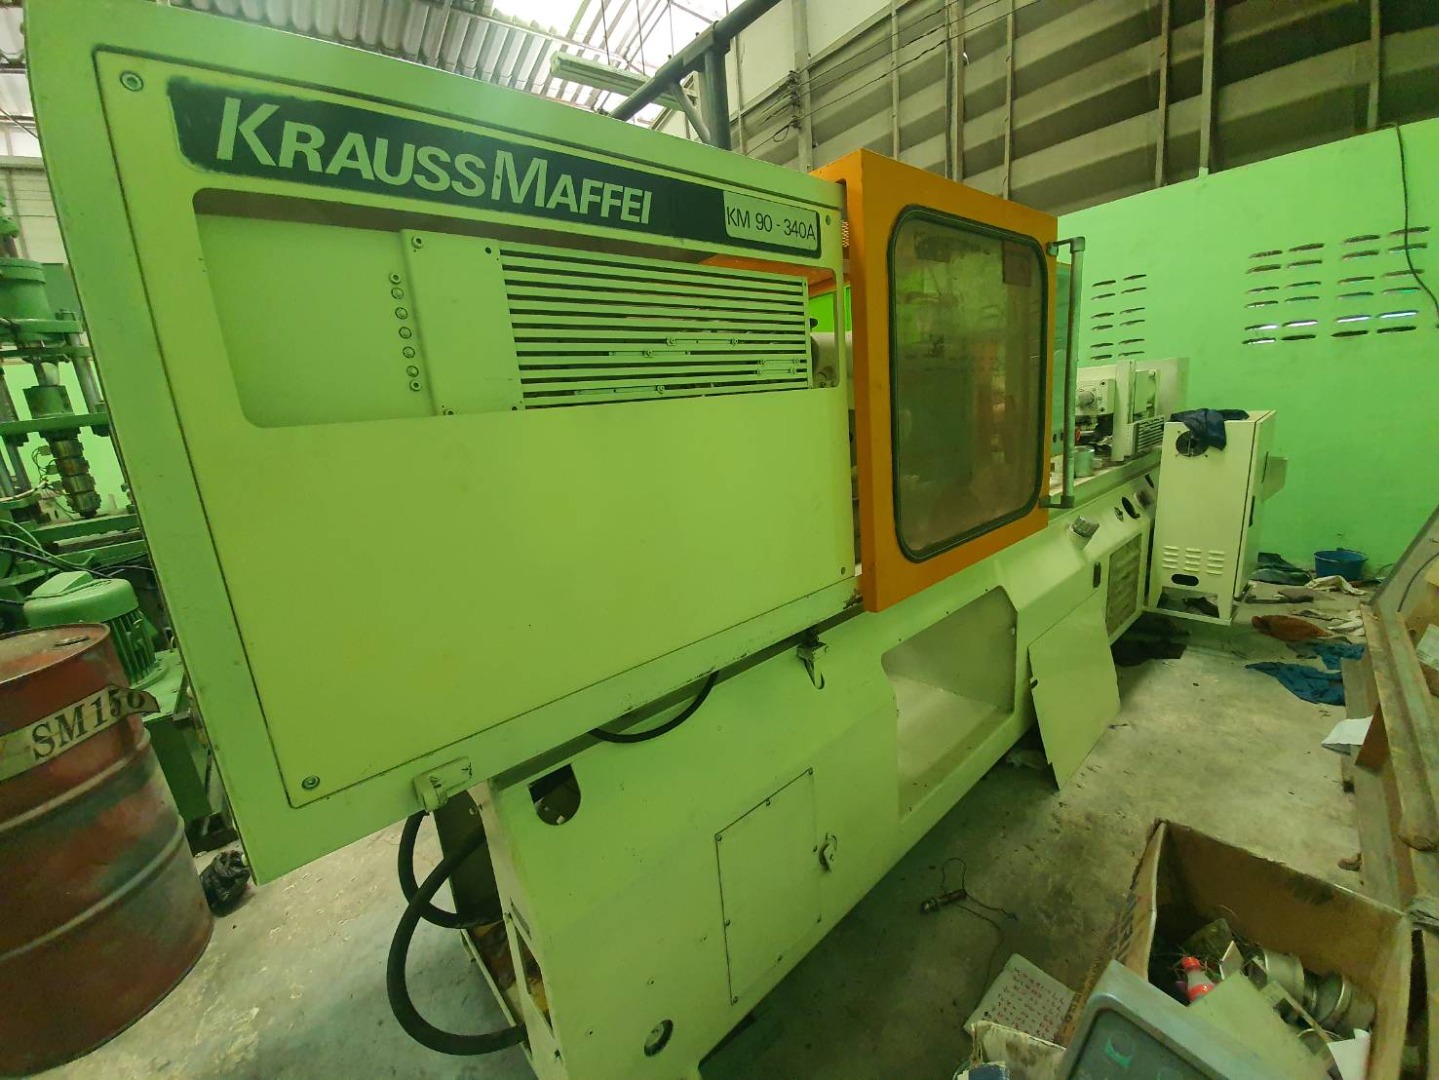 ขายเครื่องฉีดพลาสติก มือสอง ยี่ห้อ Krauss maffei  KM-90    Servo ประหยัดไฟ  Controller ใหม่ Oem ยี่ห้อ  Kaba พร้อมใช้งาน รับประกัน Controller 1 ปี